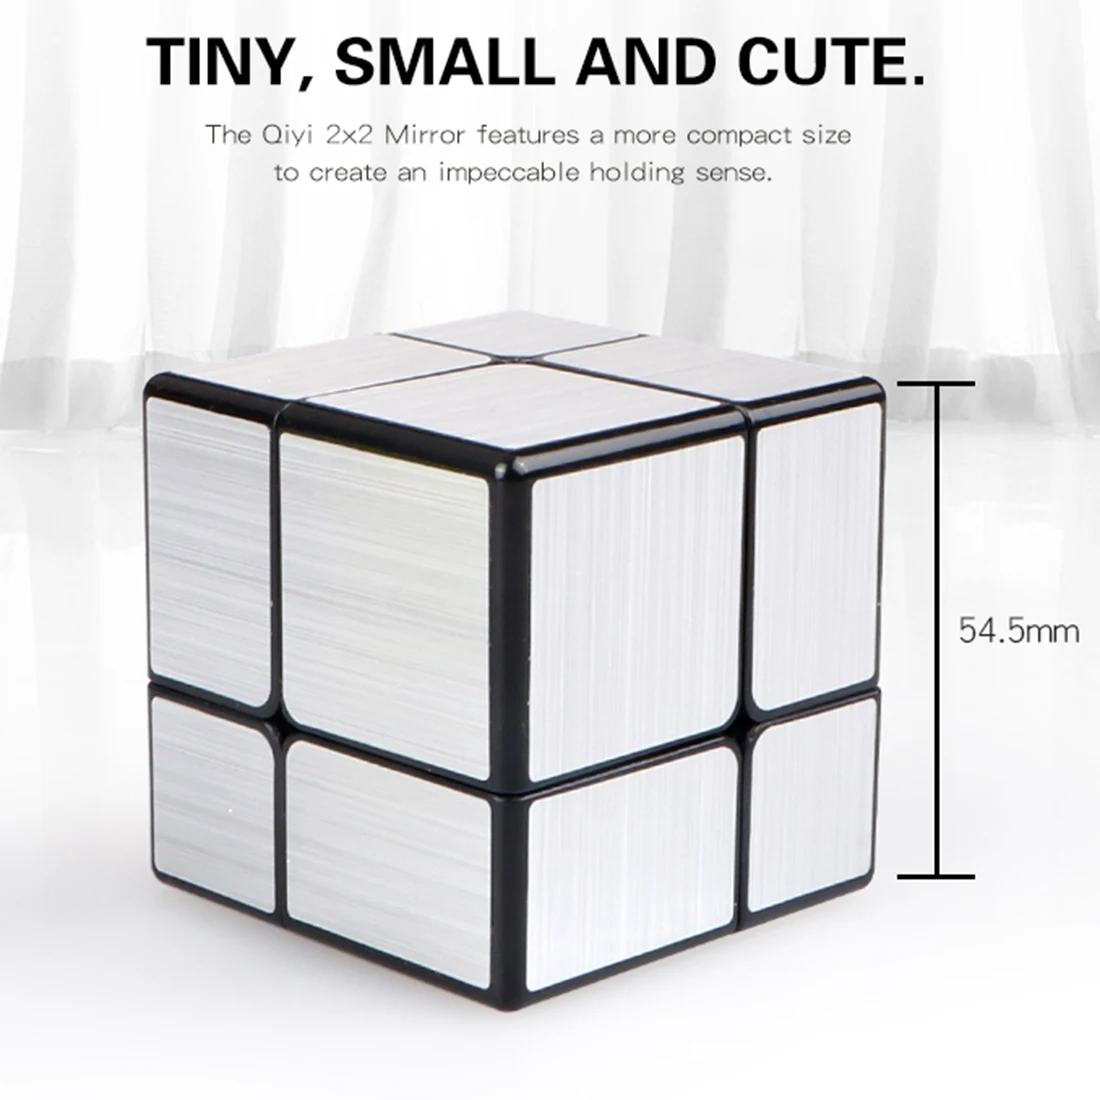 Qiyi зеркальный куб 2x2 скоростной куб 2x2x2 Волшебный Куб Головоломка Развивающие игрушки для детей Серебристые/золотистые зеркальные блоки